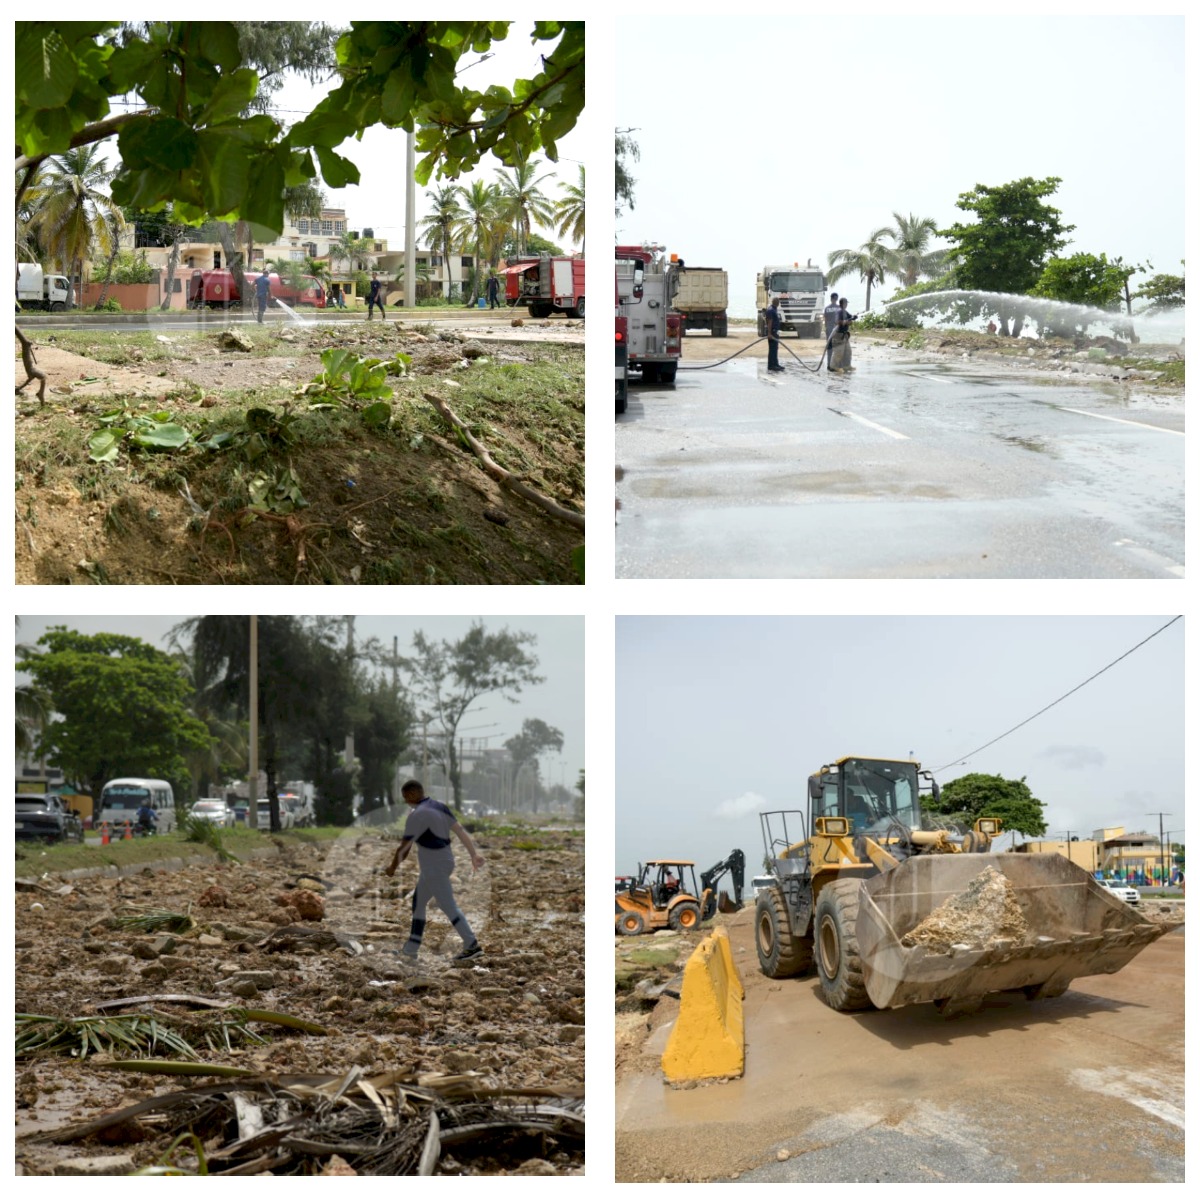 Imágenes de los trabajos de limpieza de los escombros dejados por el ciclón en la capital dominicana. Inter News Service